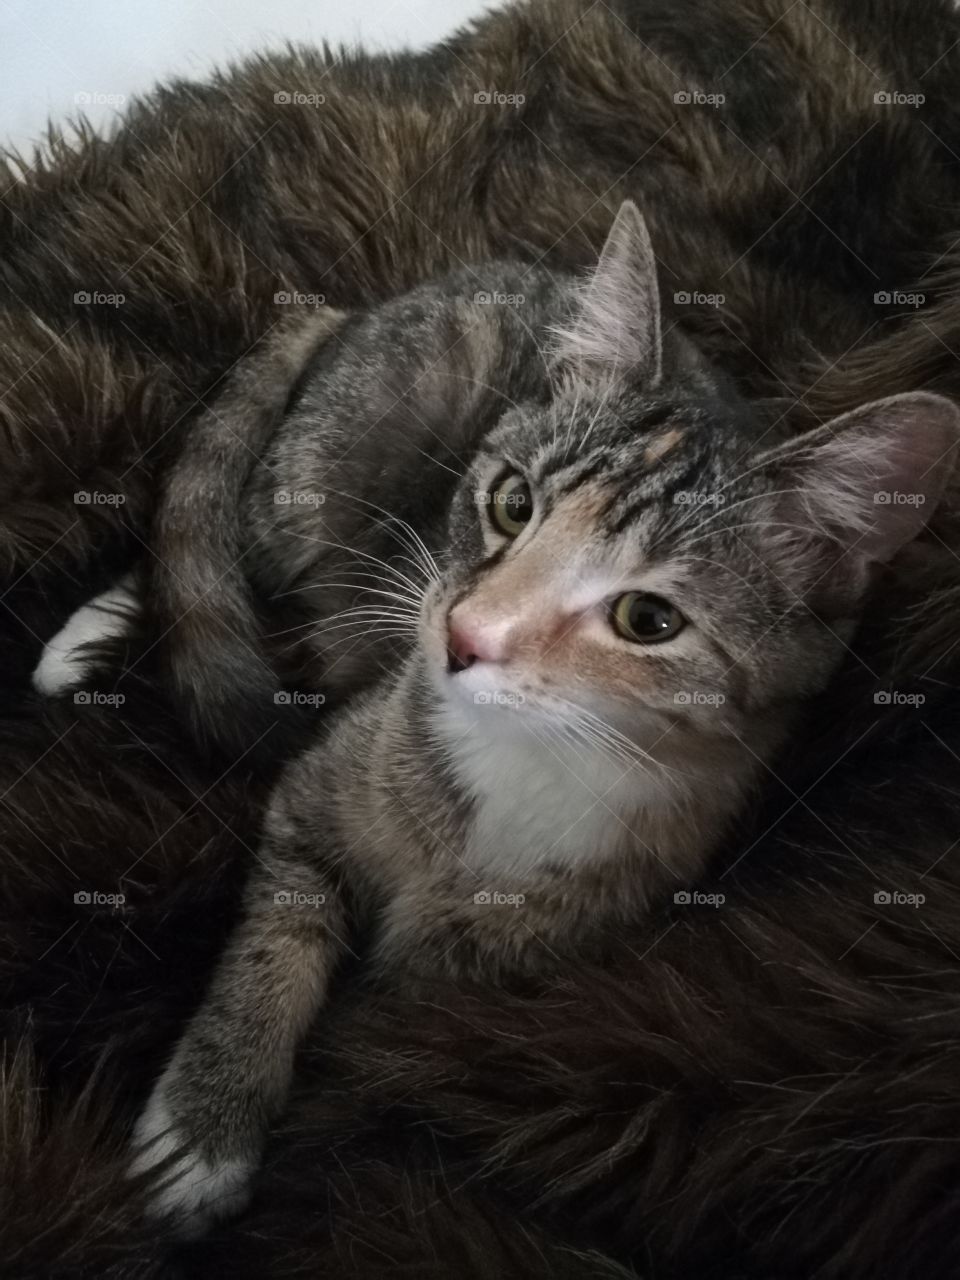 Kitten on fuzzy blanket